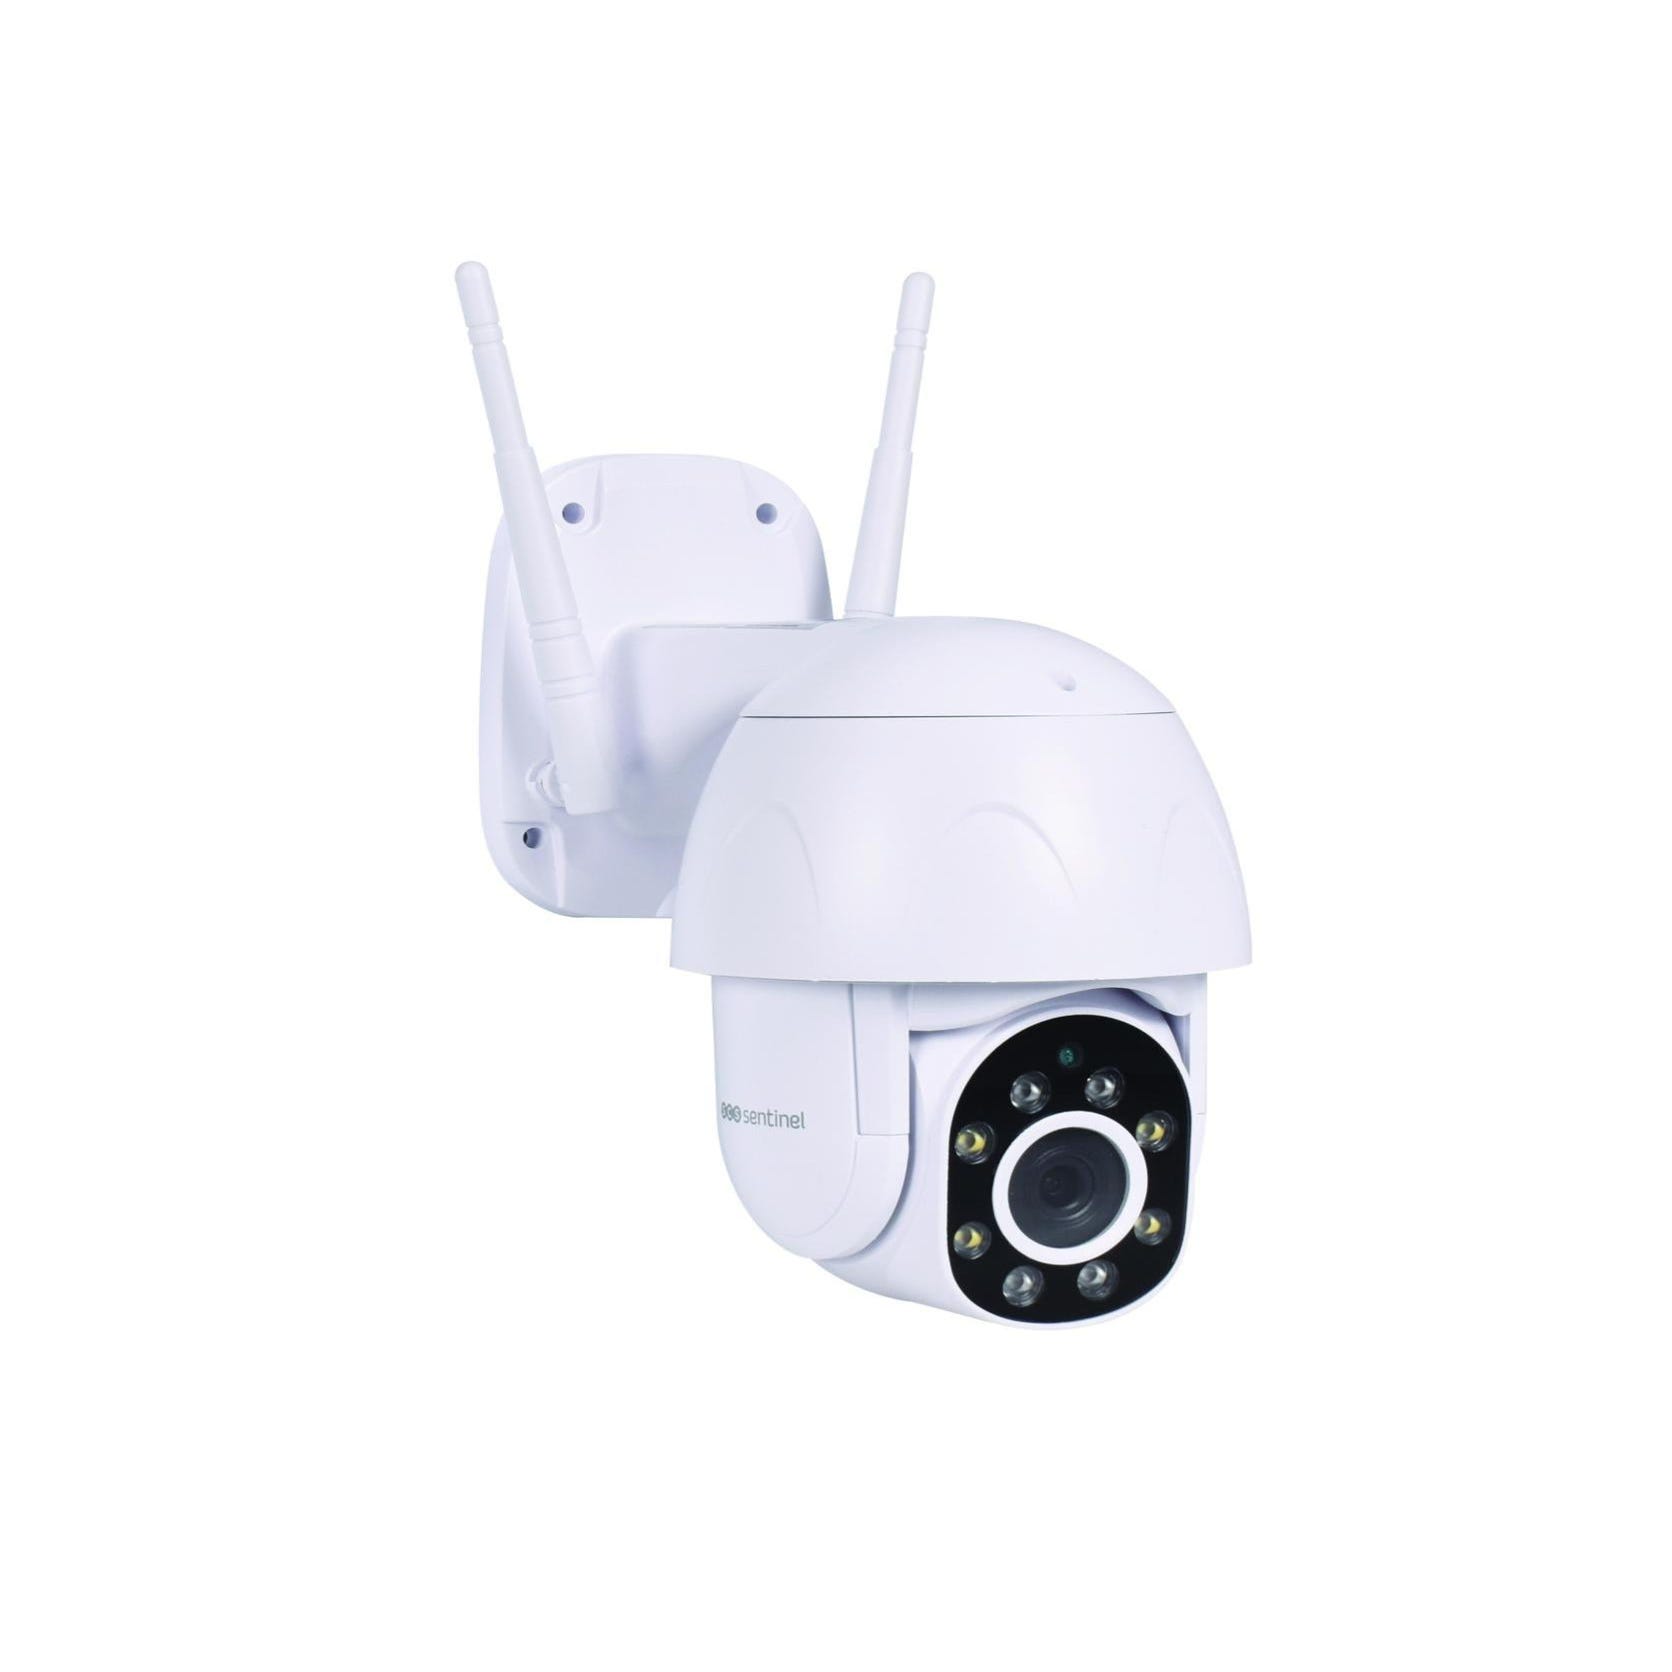 Support cameras de surveillance 80cm/15cm avec boite jonction - INTEGSY